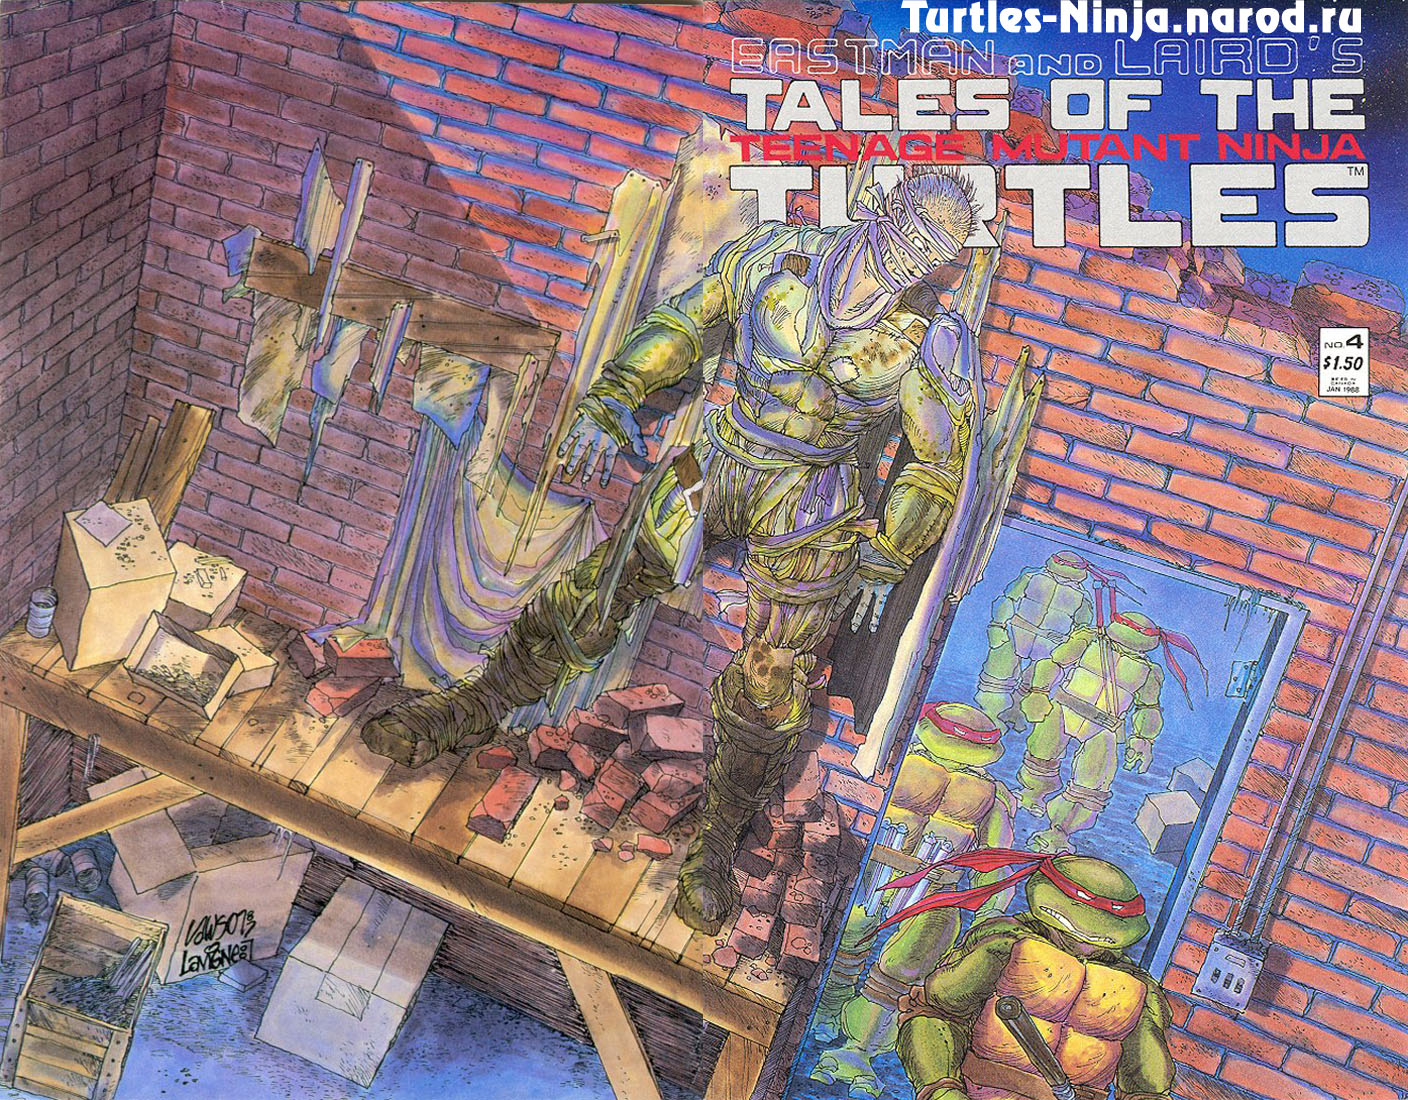 Read online Tales of the Teenage Mutant Ninja Turtles comic -  Issue #4 - 1